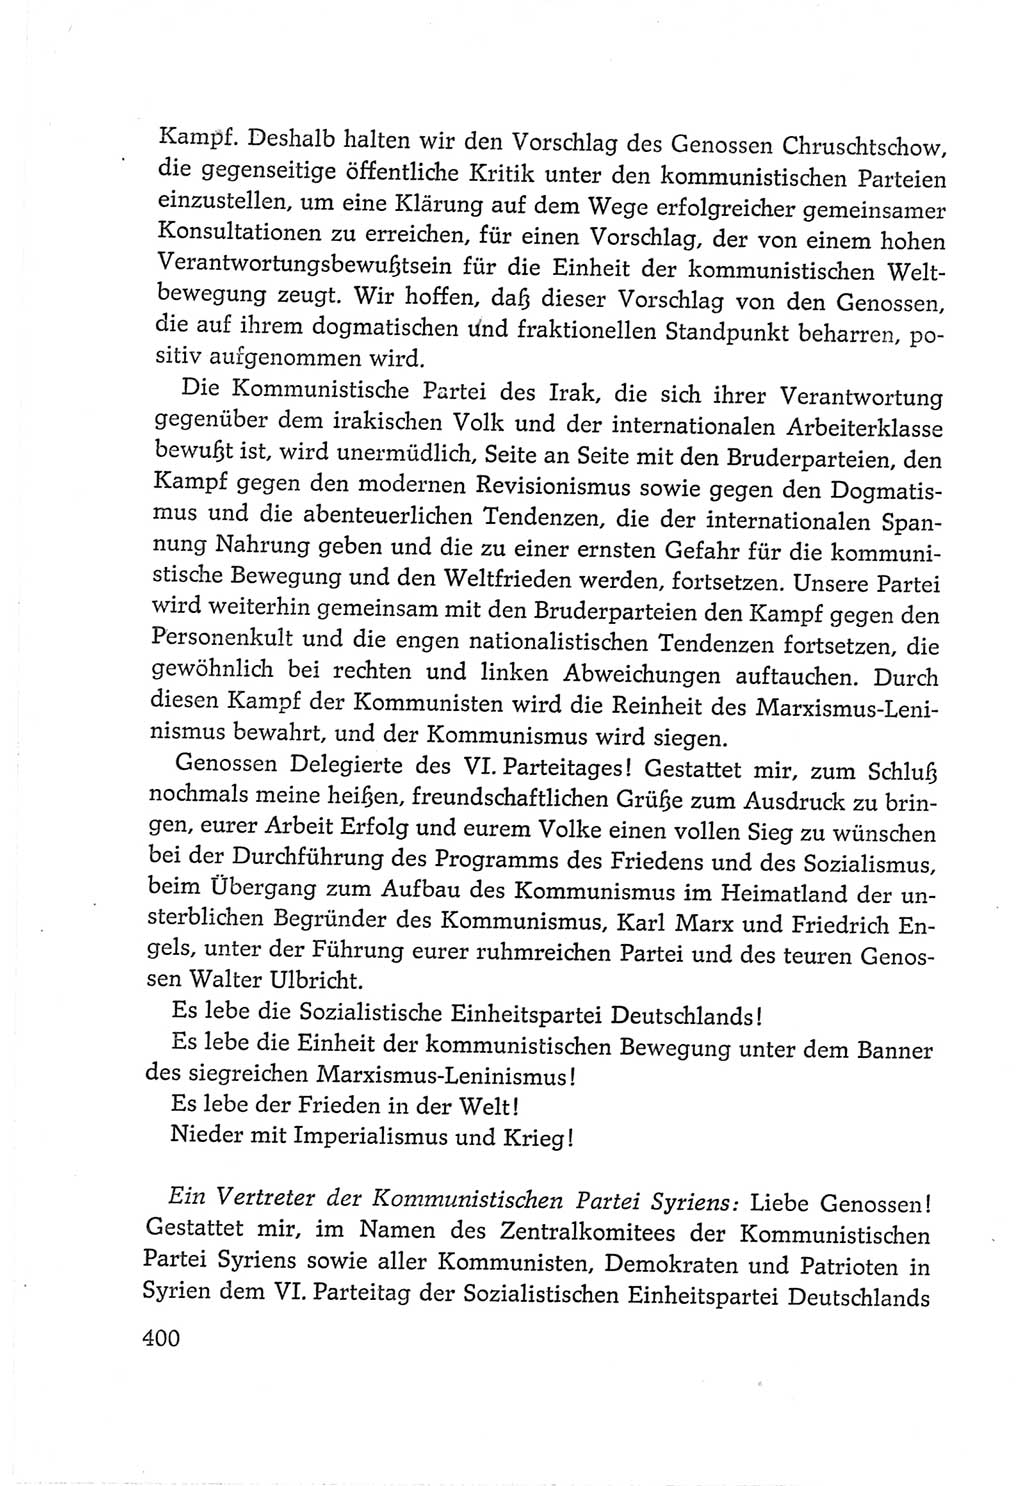 Protokoll der Verhandlungen des Ⅵ. Parteitages der Sozialistischen Einheitspartei Deutschlands (SED) [Deutsche Demokratische Republik (DDR)] 1963, Band Ⅱ, Seite 400 (Prot. Verh. Ⅵ. PT SED DDR 1963, Bd. Ⅱ, S. 400)